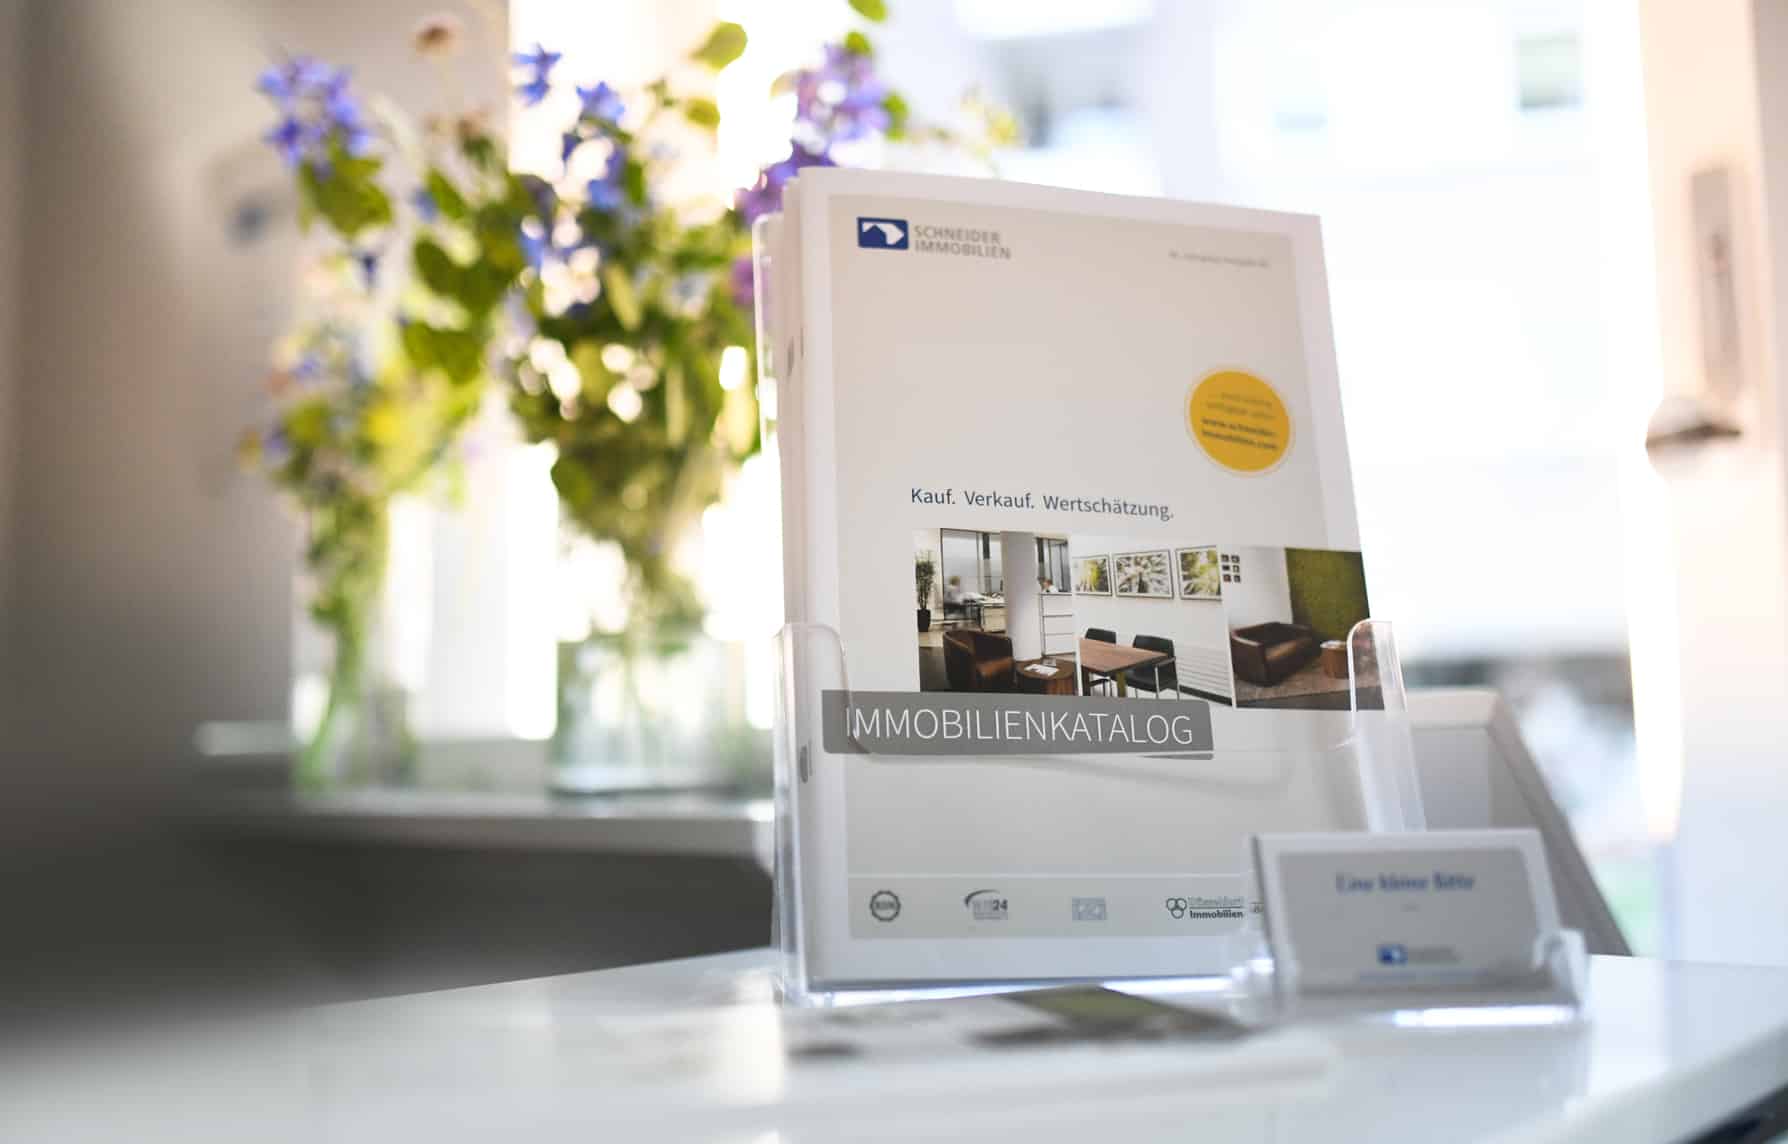 Der neueste Immobilienkatalog mit Immobilien in Ratingen und Umgebung bei Schneider Immobilien GmbH zum Mitnehmen